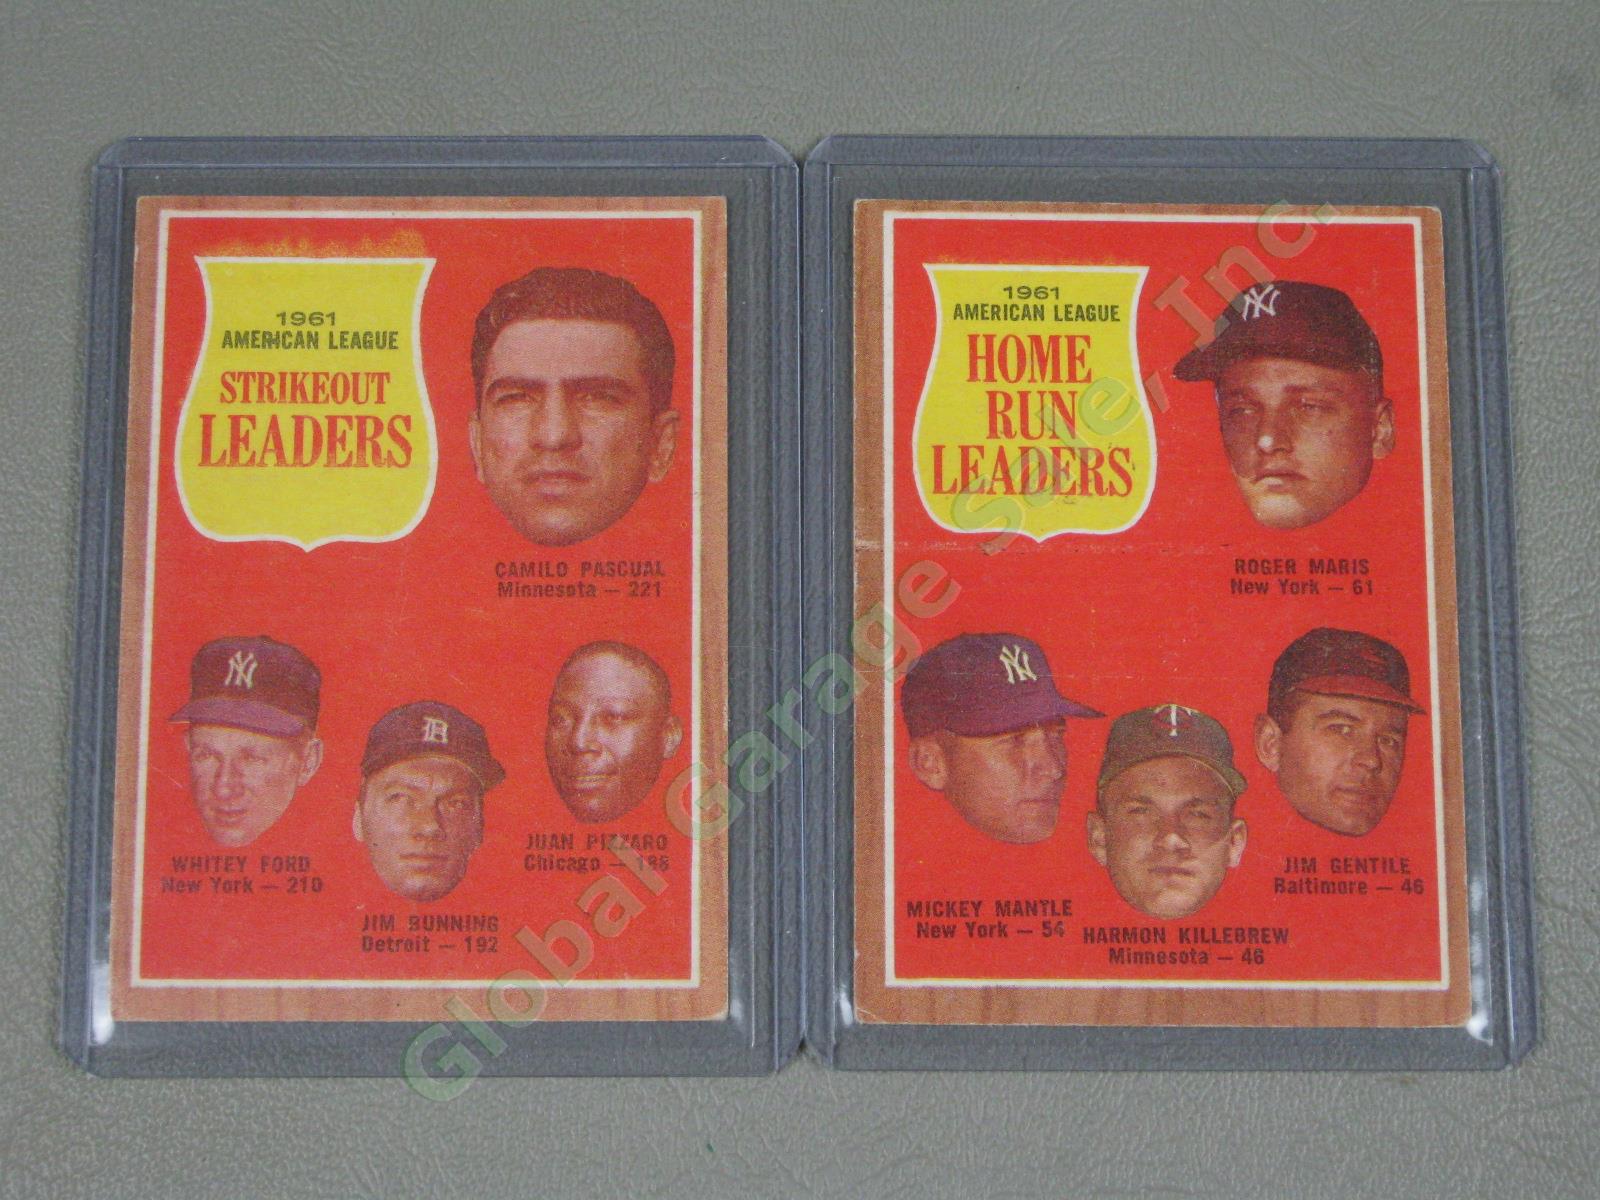 160 Vtg 1961 1962 1963 Topps Baseball Card Lot w/ RBI Home Run Leaders + VG-EX 1